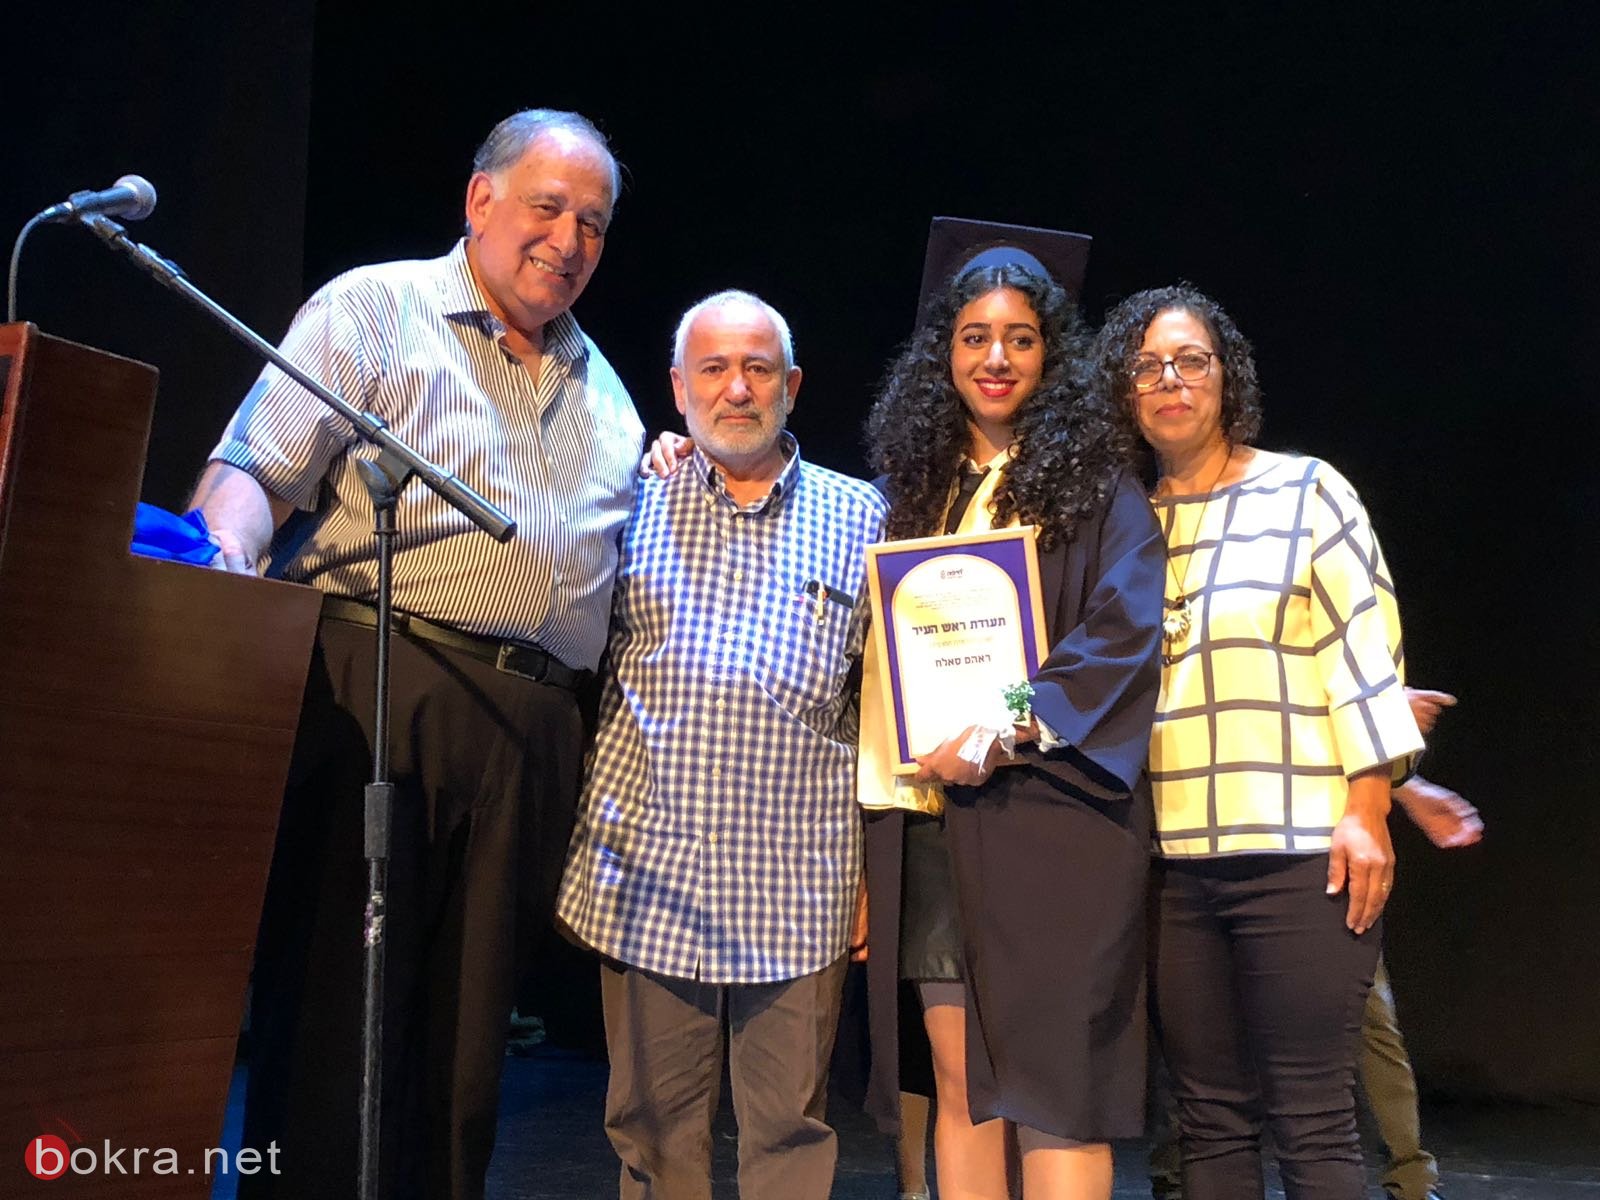 ثانوية الكرمة للعلوم في حيفا تحتفل بتخريج الفوج الثالث من طلاب الثواني عشر-6